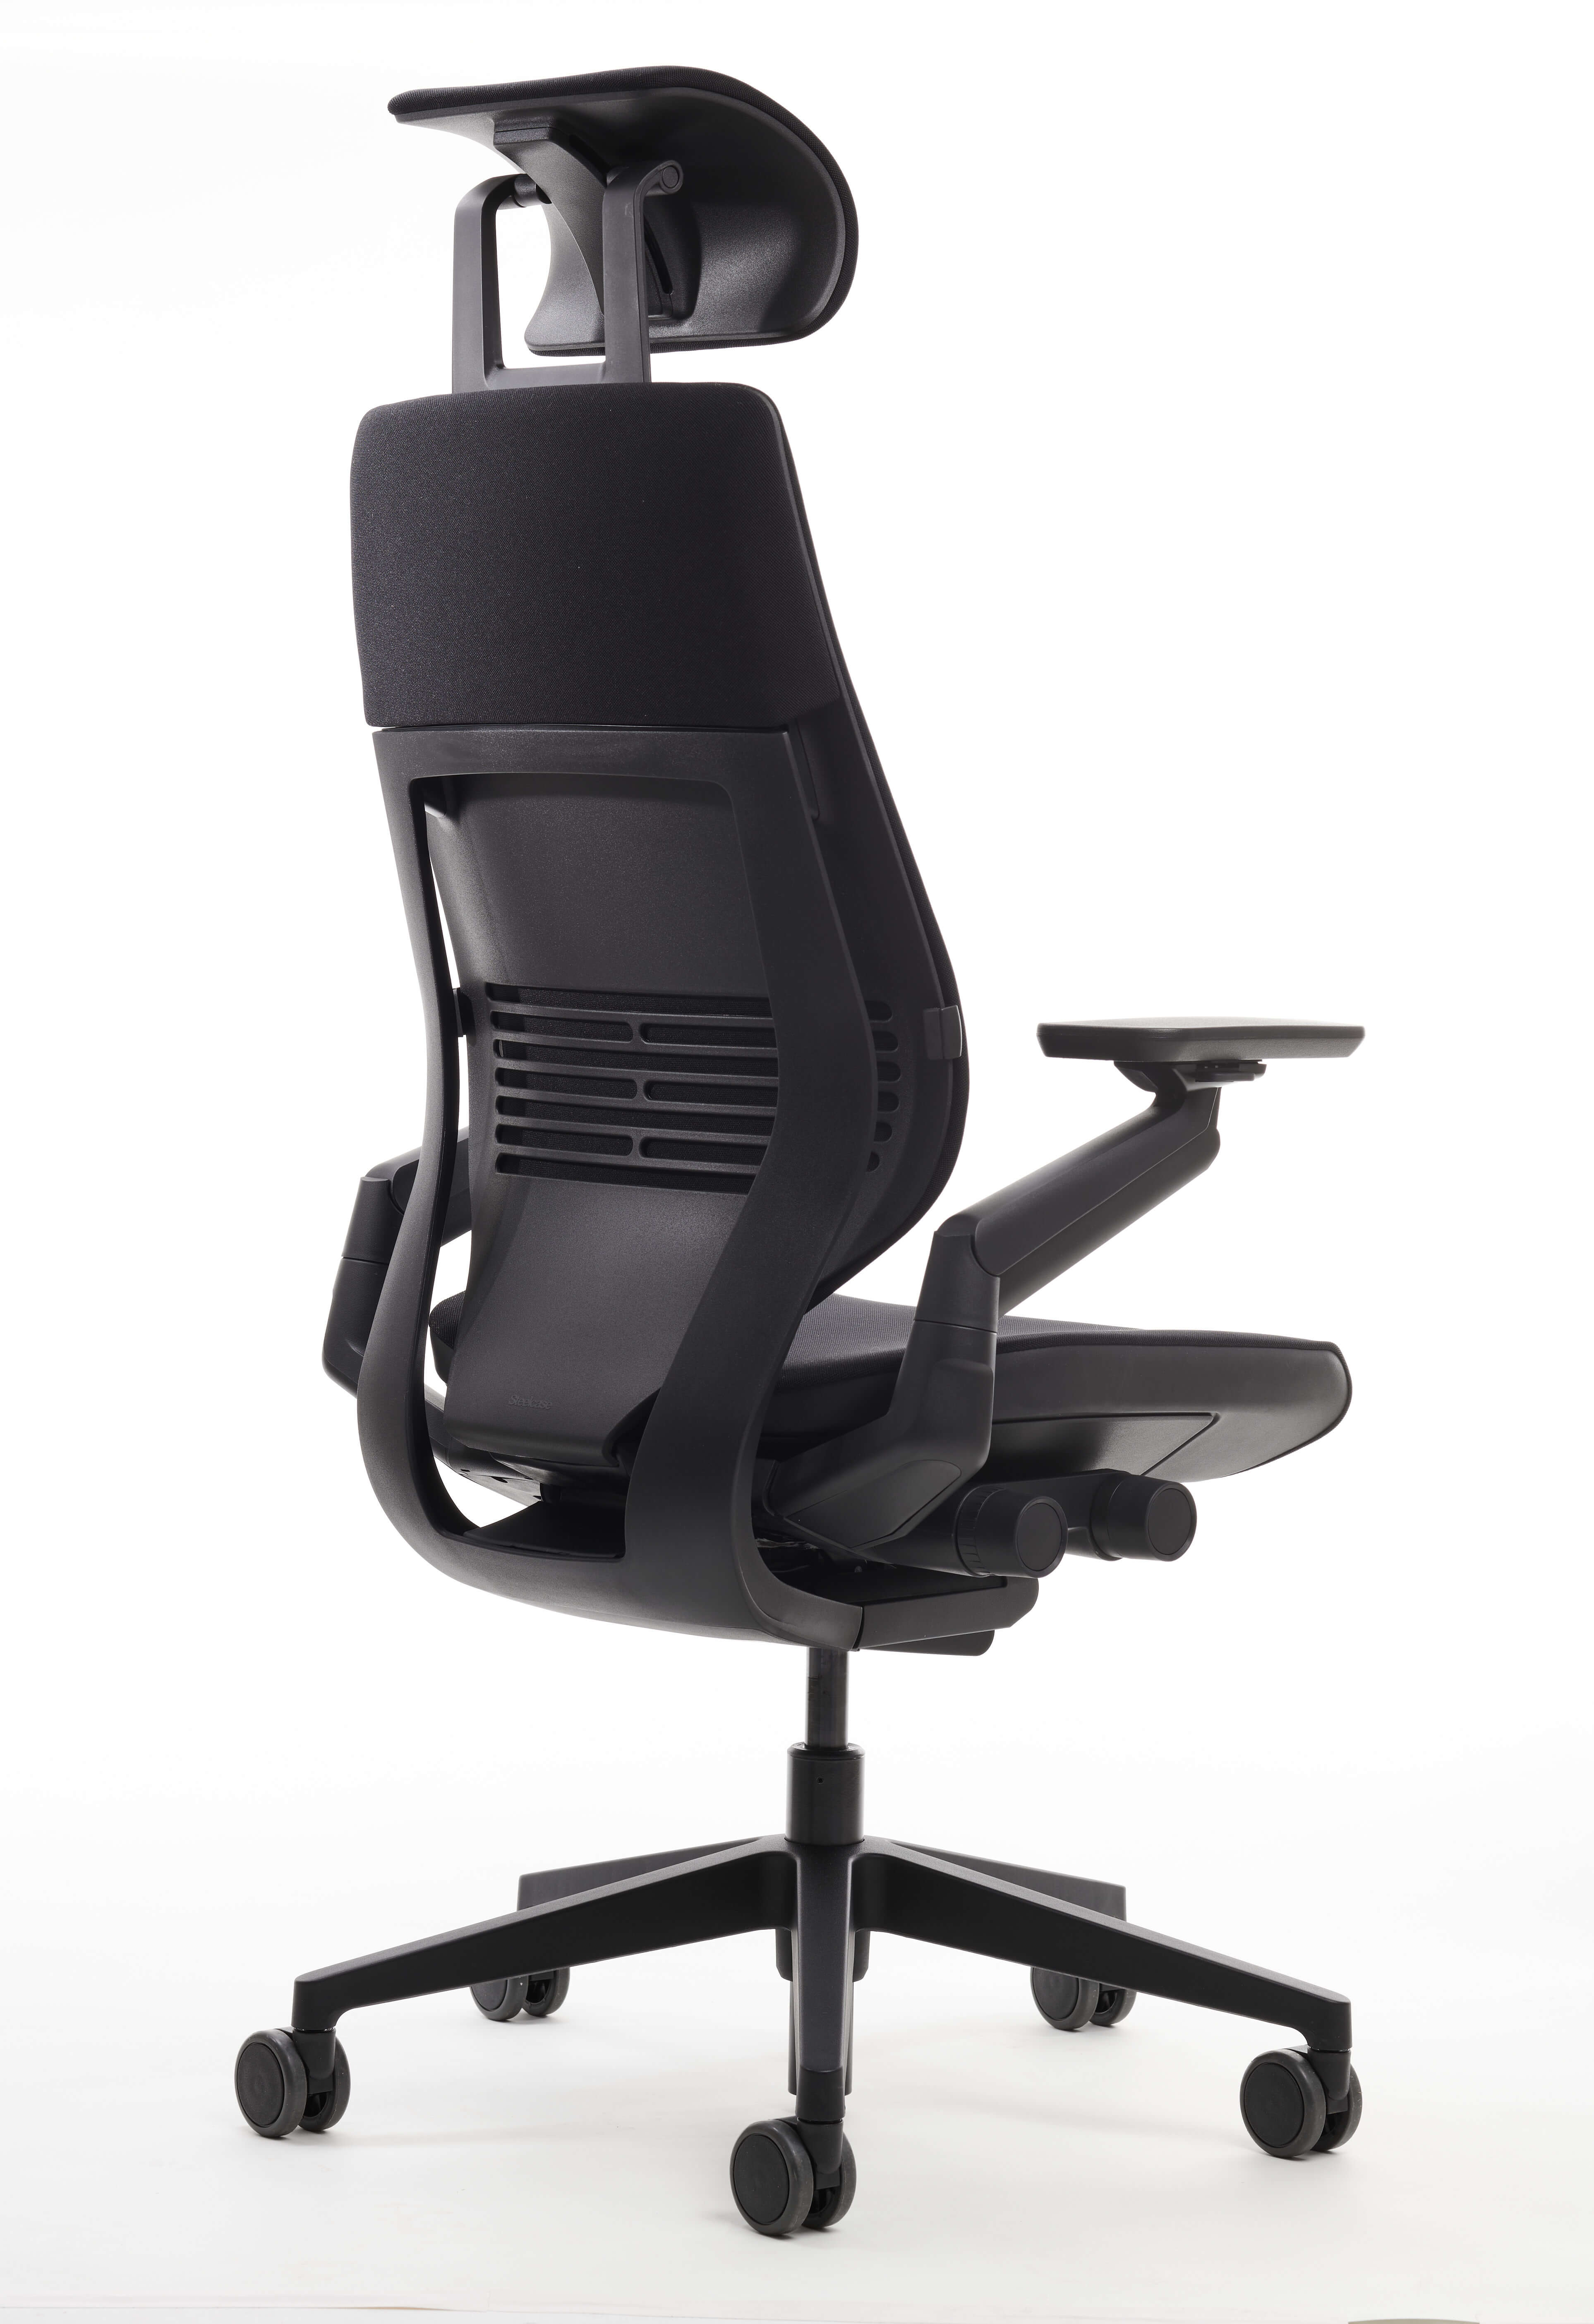 Steelcase Gesture Chair with Headrest